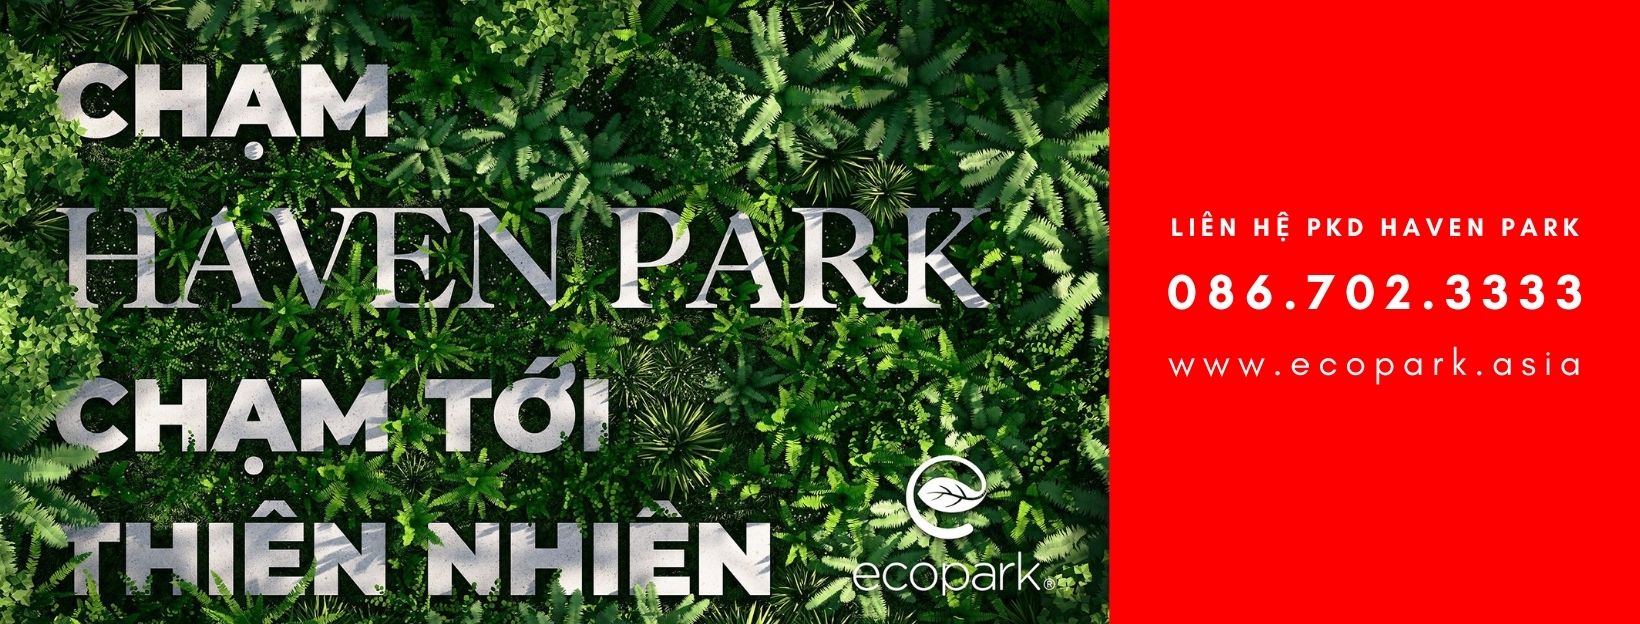 Chung cư Haven Park - Bali trong lòng Ecopark